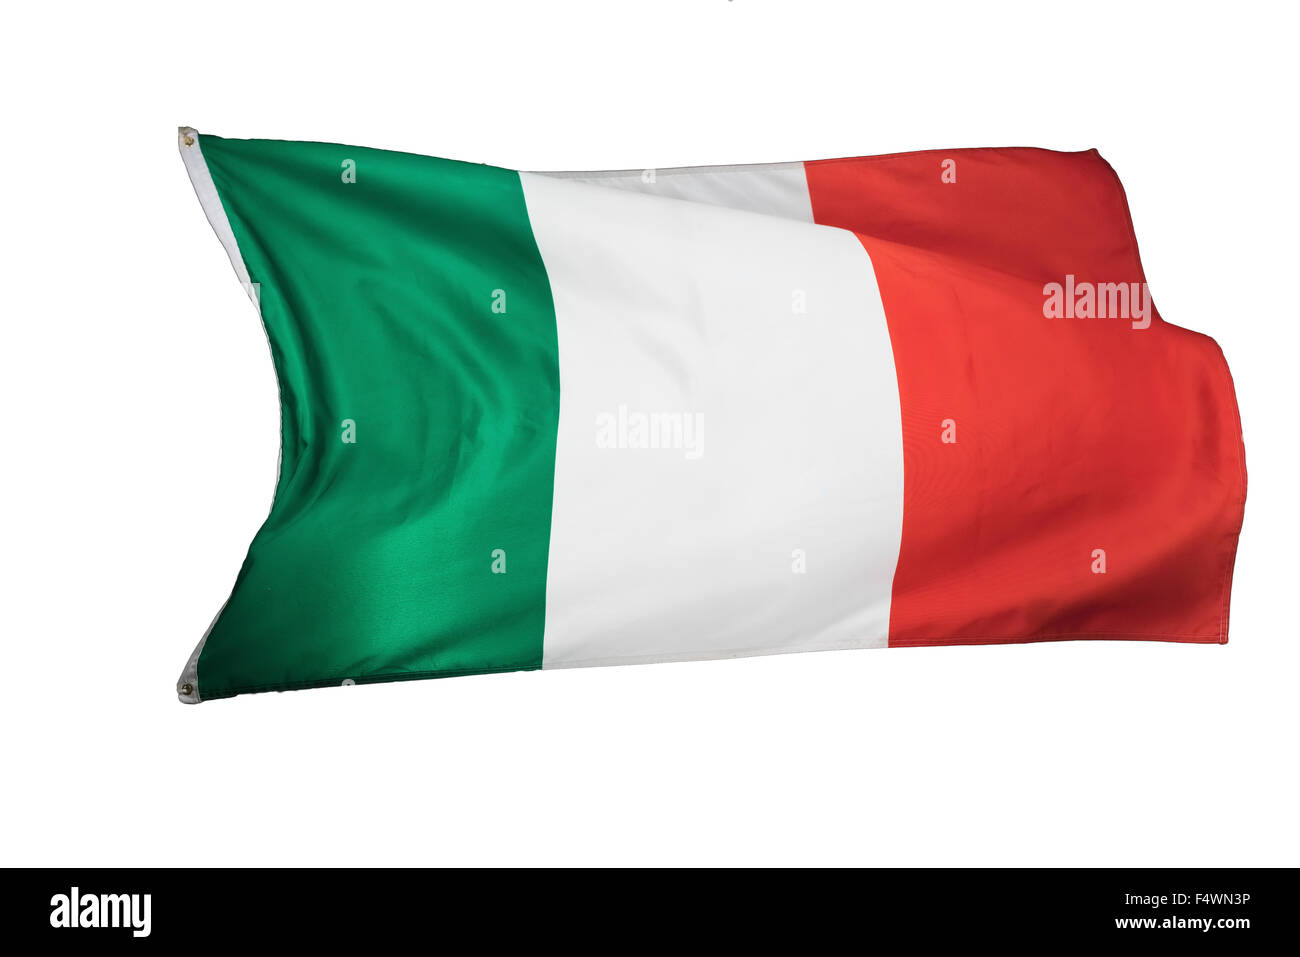 Drapeau national italien, drapeau italien Banque D'Images